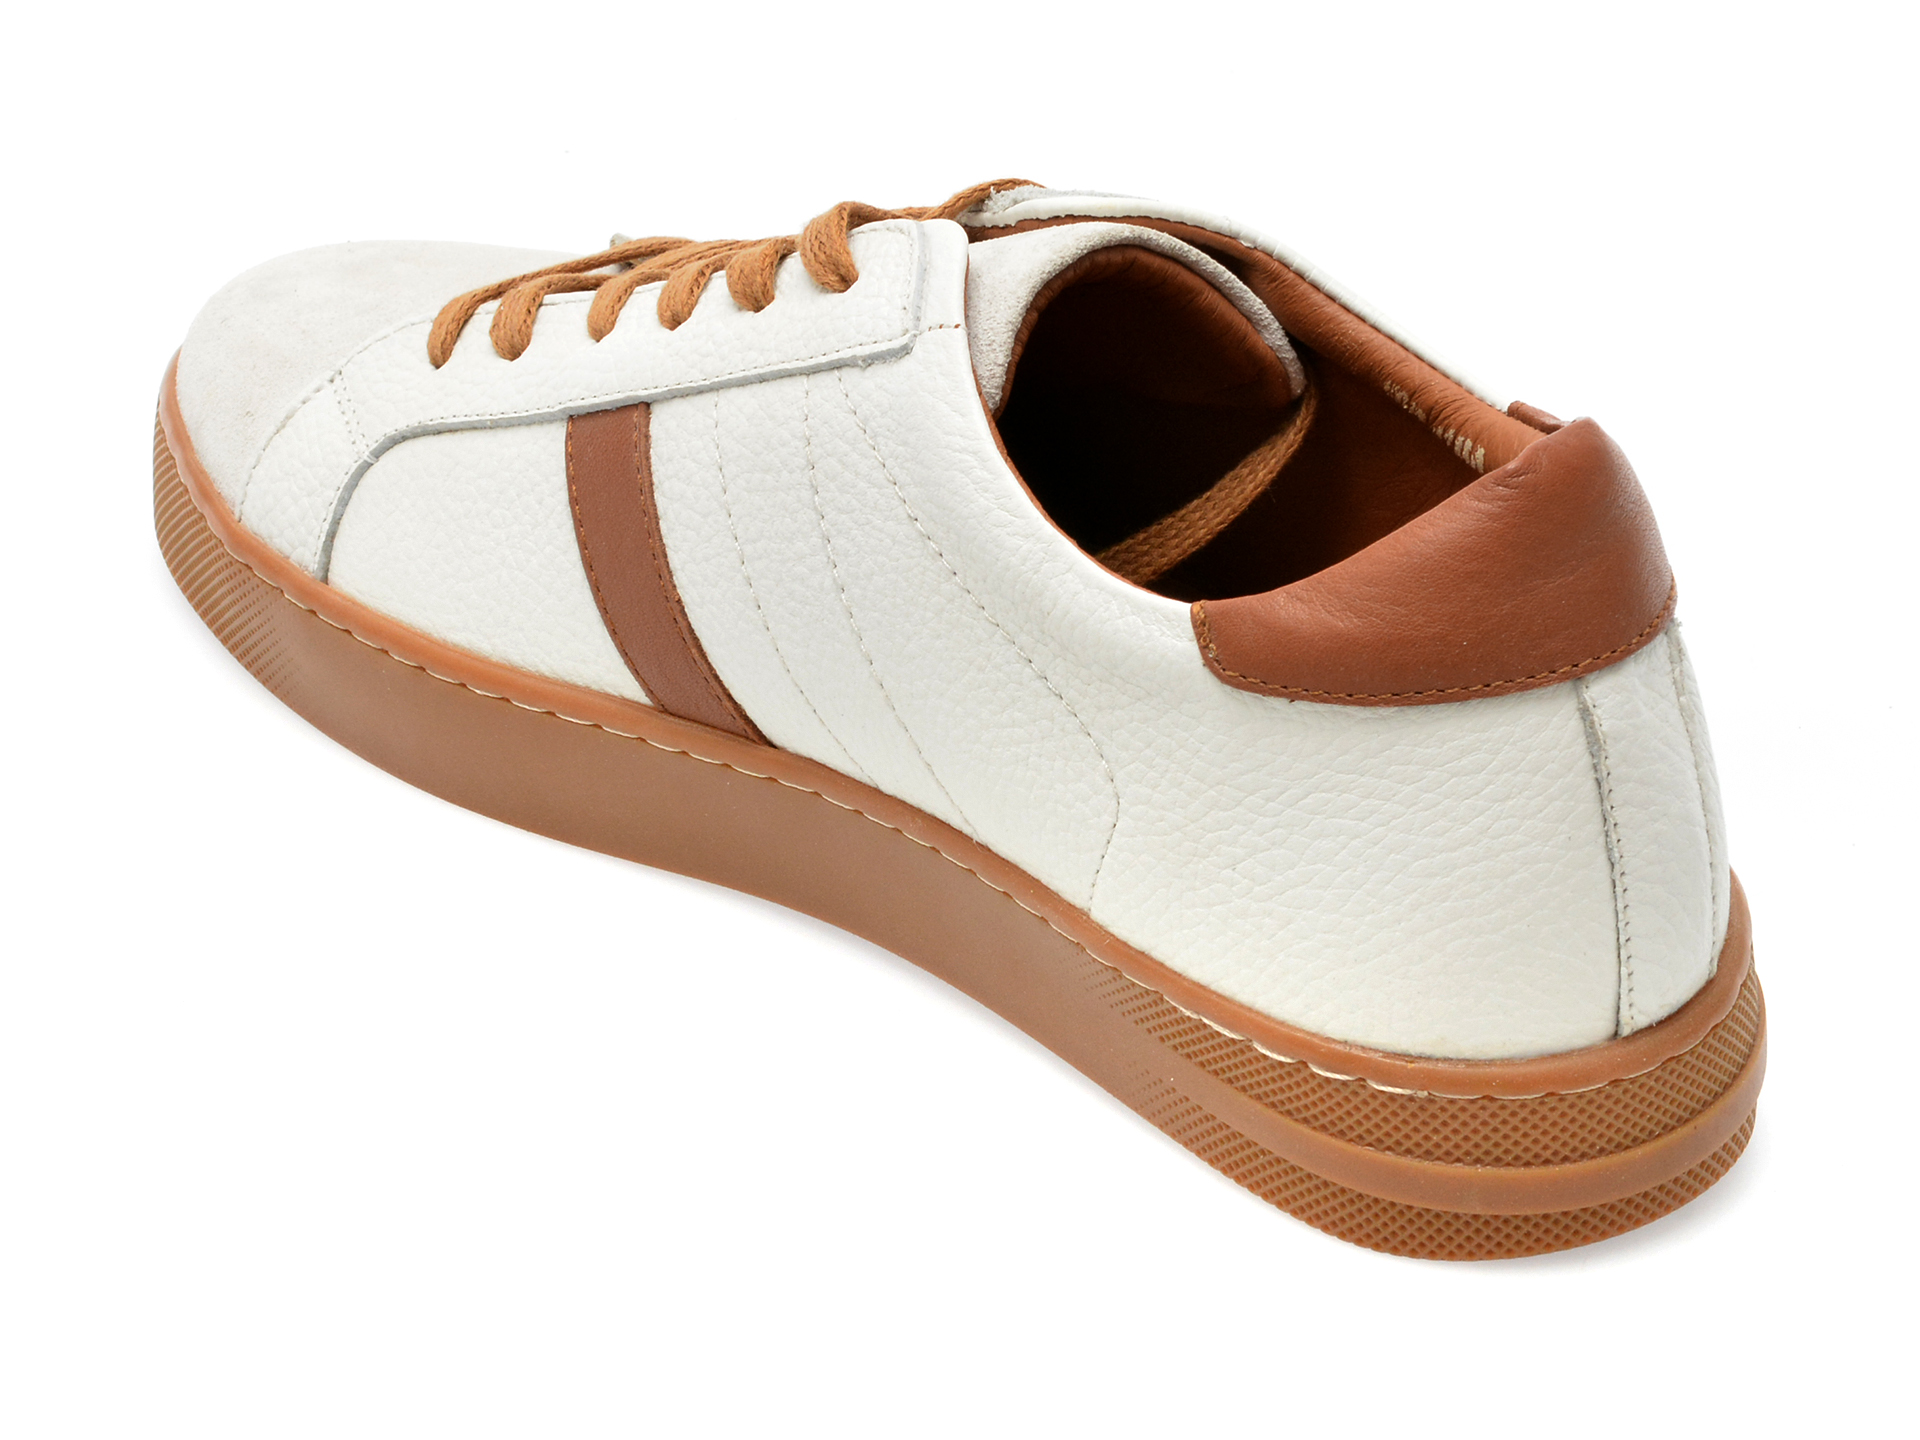 Pantofi AXXELLL albi, MS1005, din piele naturala